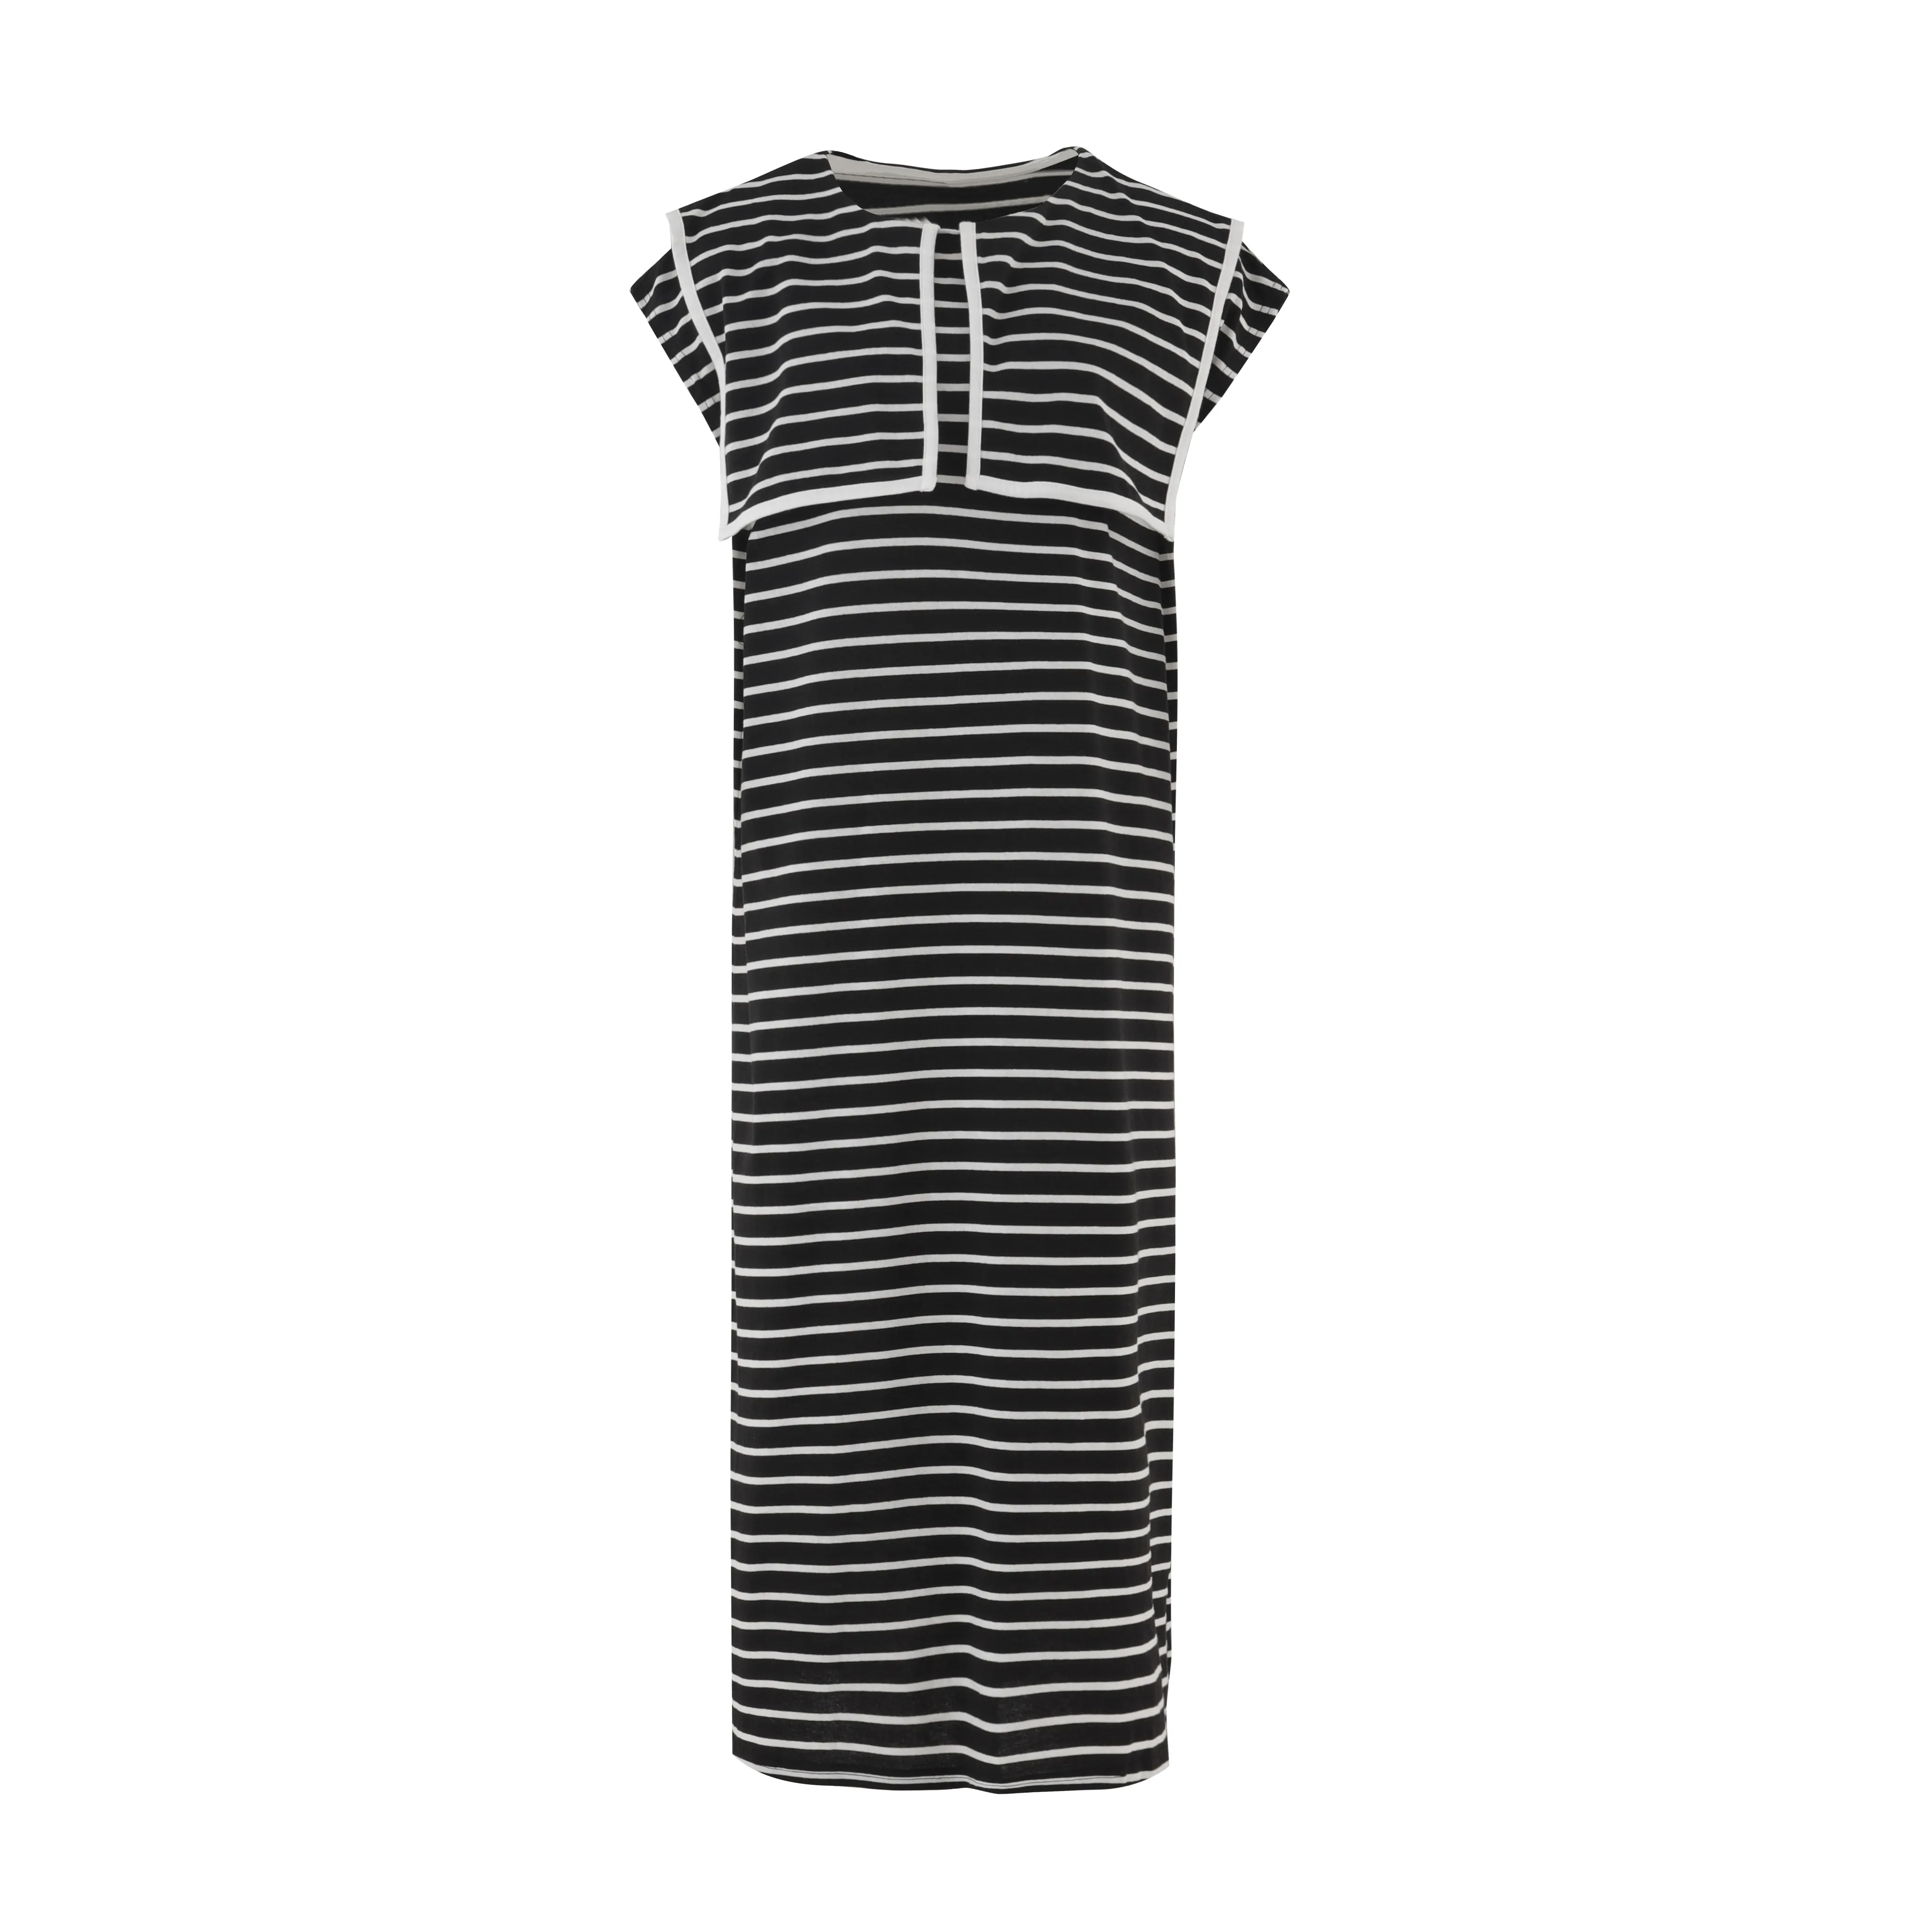 Vestido feminino 100% lã merino preto e branco listrado de gola redonda longa manga curta